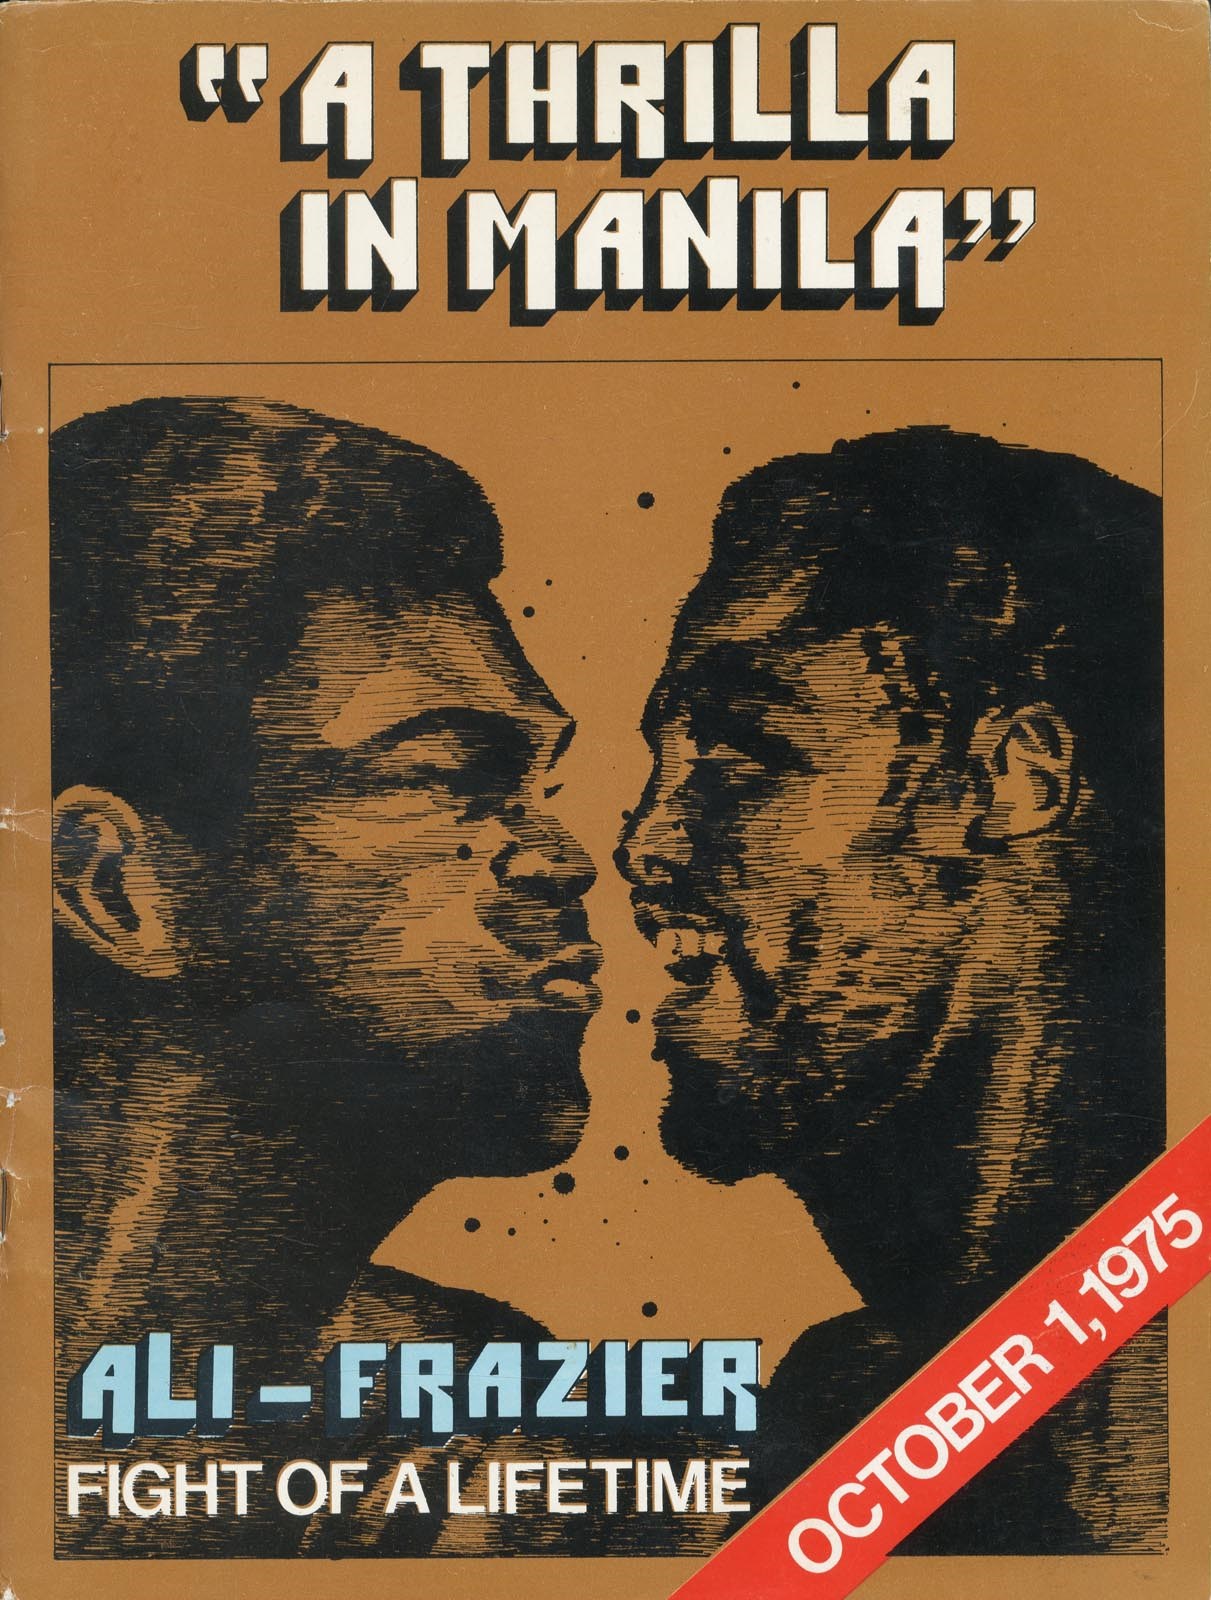 1975 Ali vs. Frazier III "Thrilla in Manila" On-Site Program